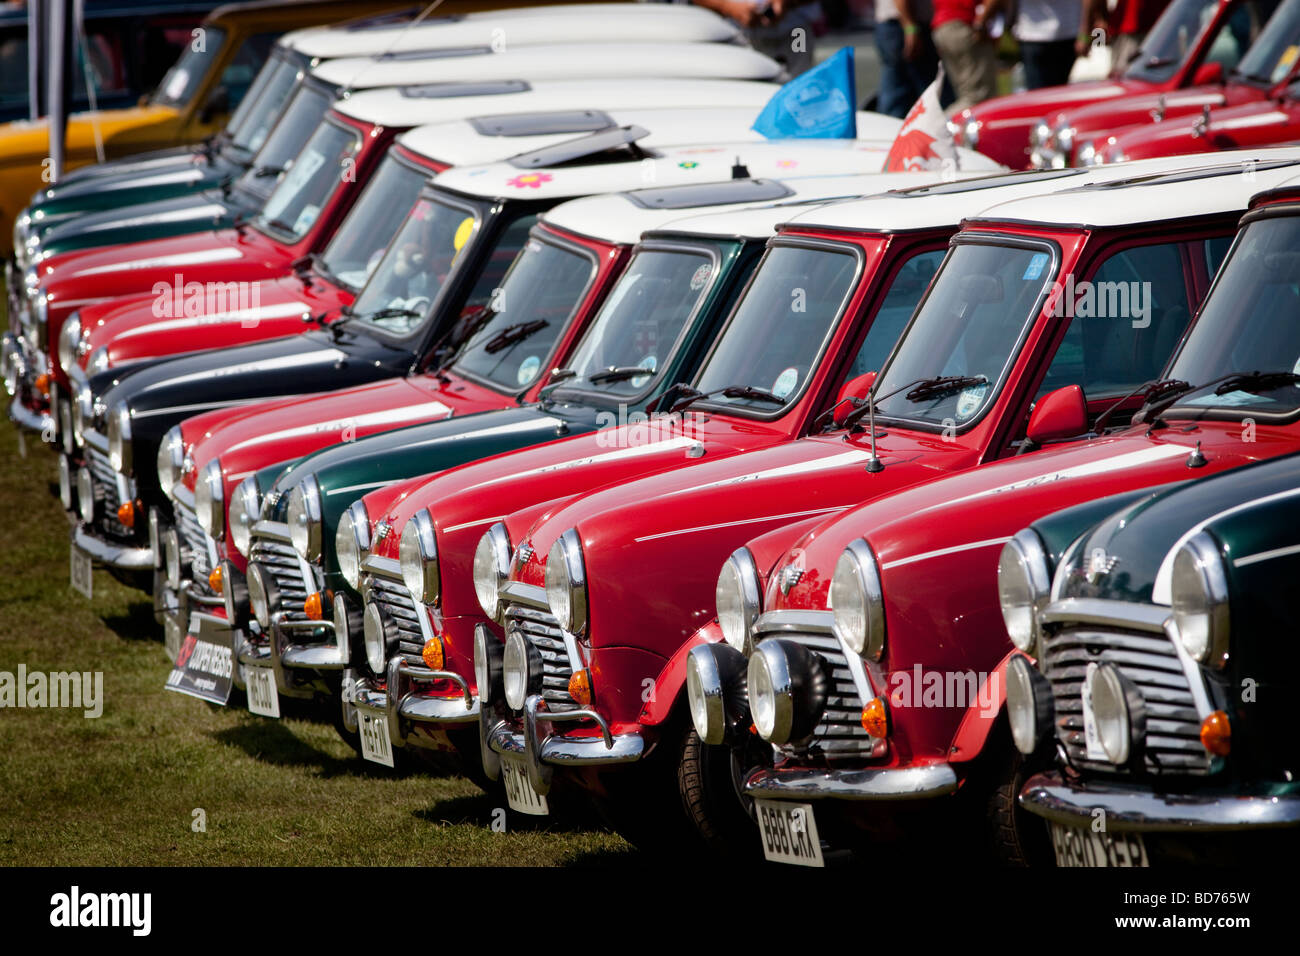 Une rangée de Mini Cooper voitures de rallye à l'occasion du 50e anniversaire de la naissance du marquage Mini, Birmingham, Angleterre, RU Banque D'Images